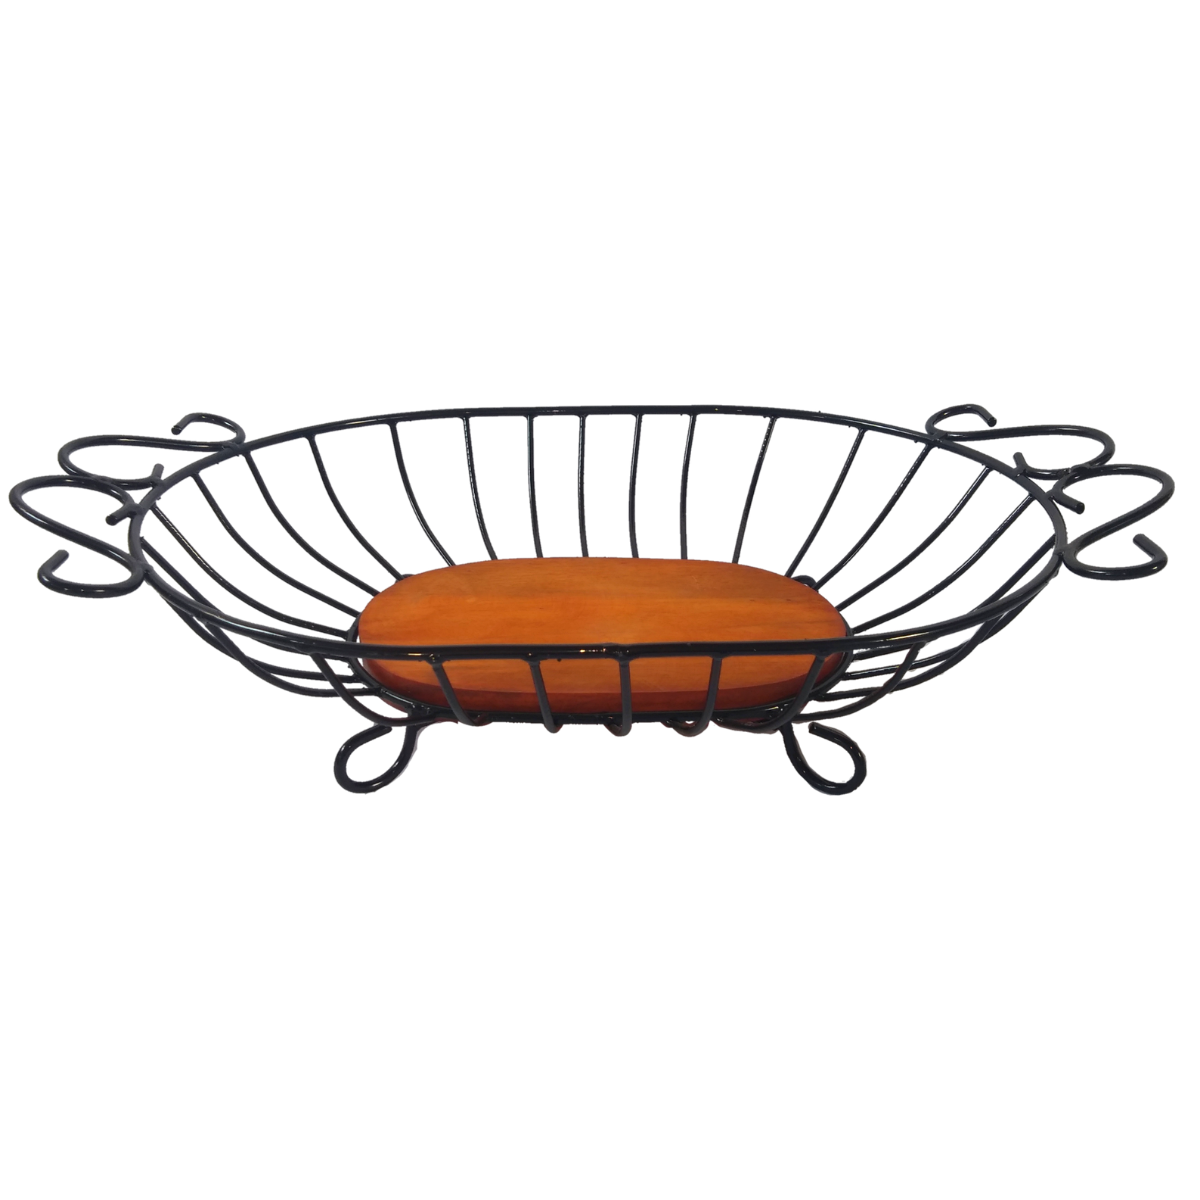 Fruteira de mesa grande oval de ferro e madeira super resistente e espaçosa ótima decoração para coz - 4